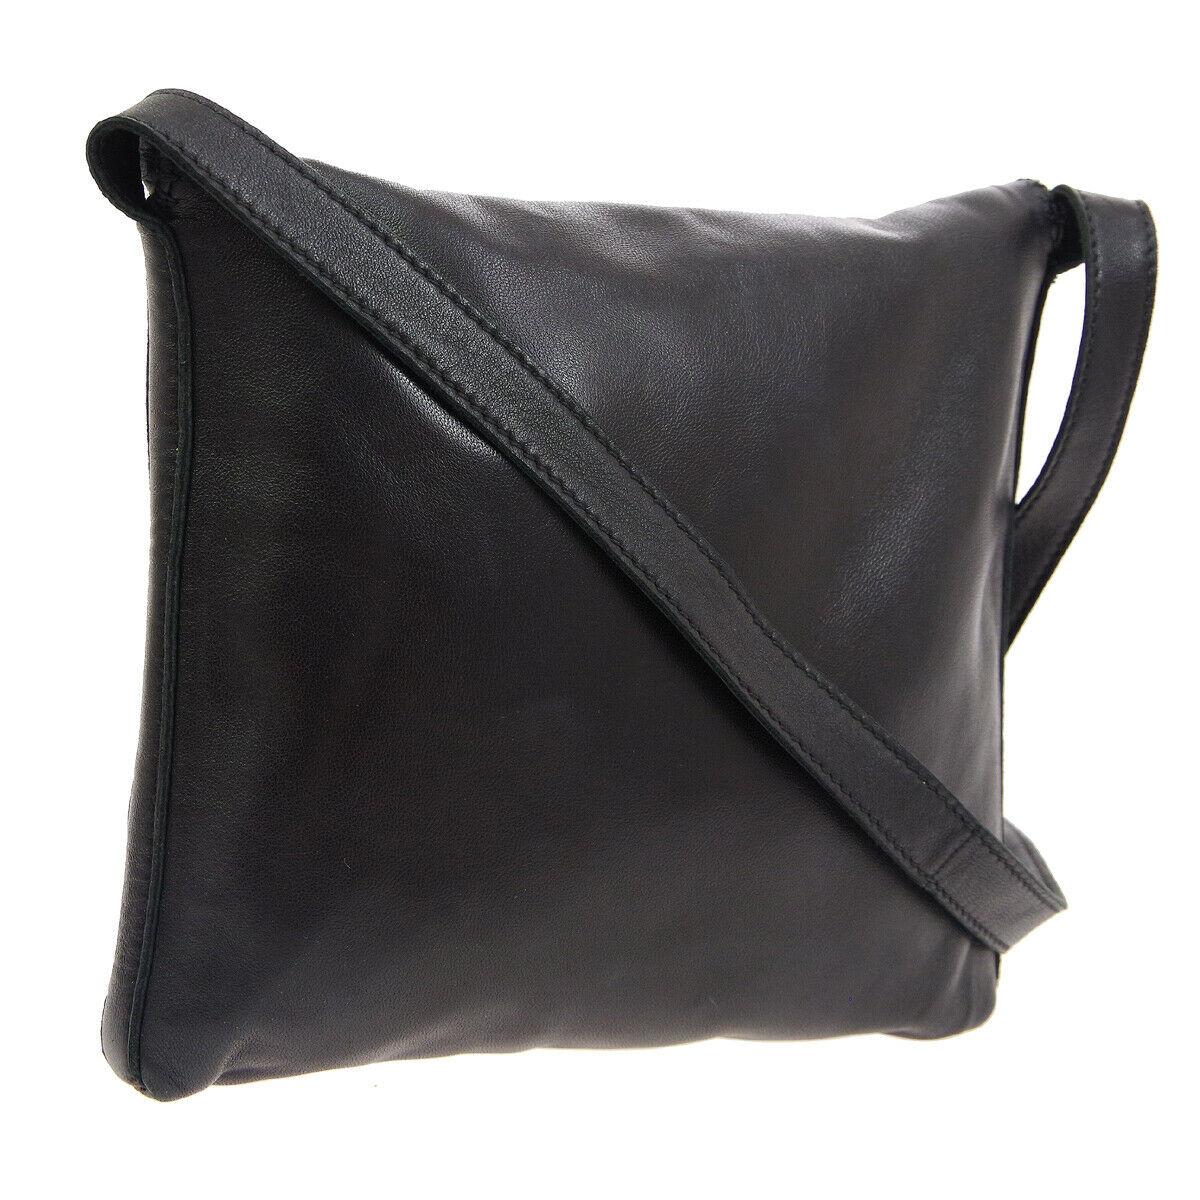 Hermes Black Leather Tassel Small Mini Carryall Shoulder Bag

Leather
Leather lining
Made in France
Shoulder strap 23